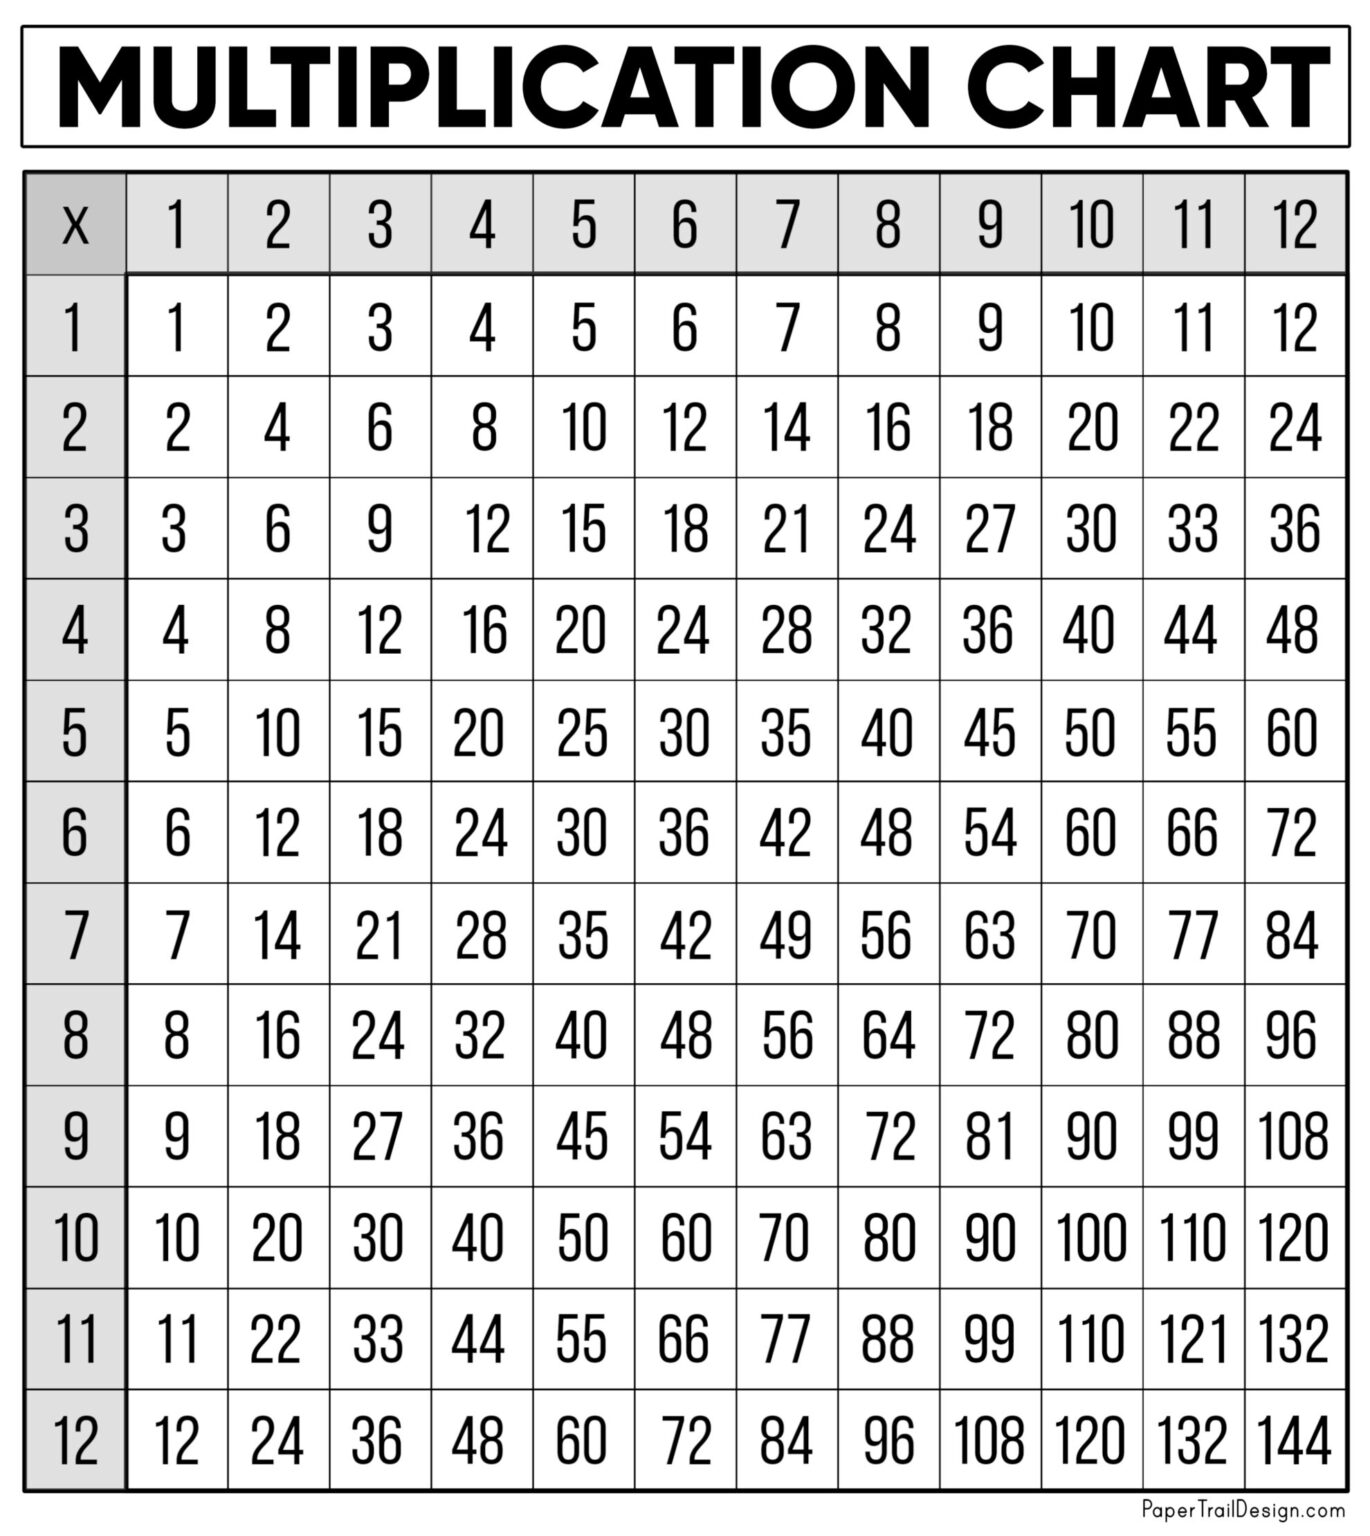 printable-multiplication-table-charts-printable-world-holiday